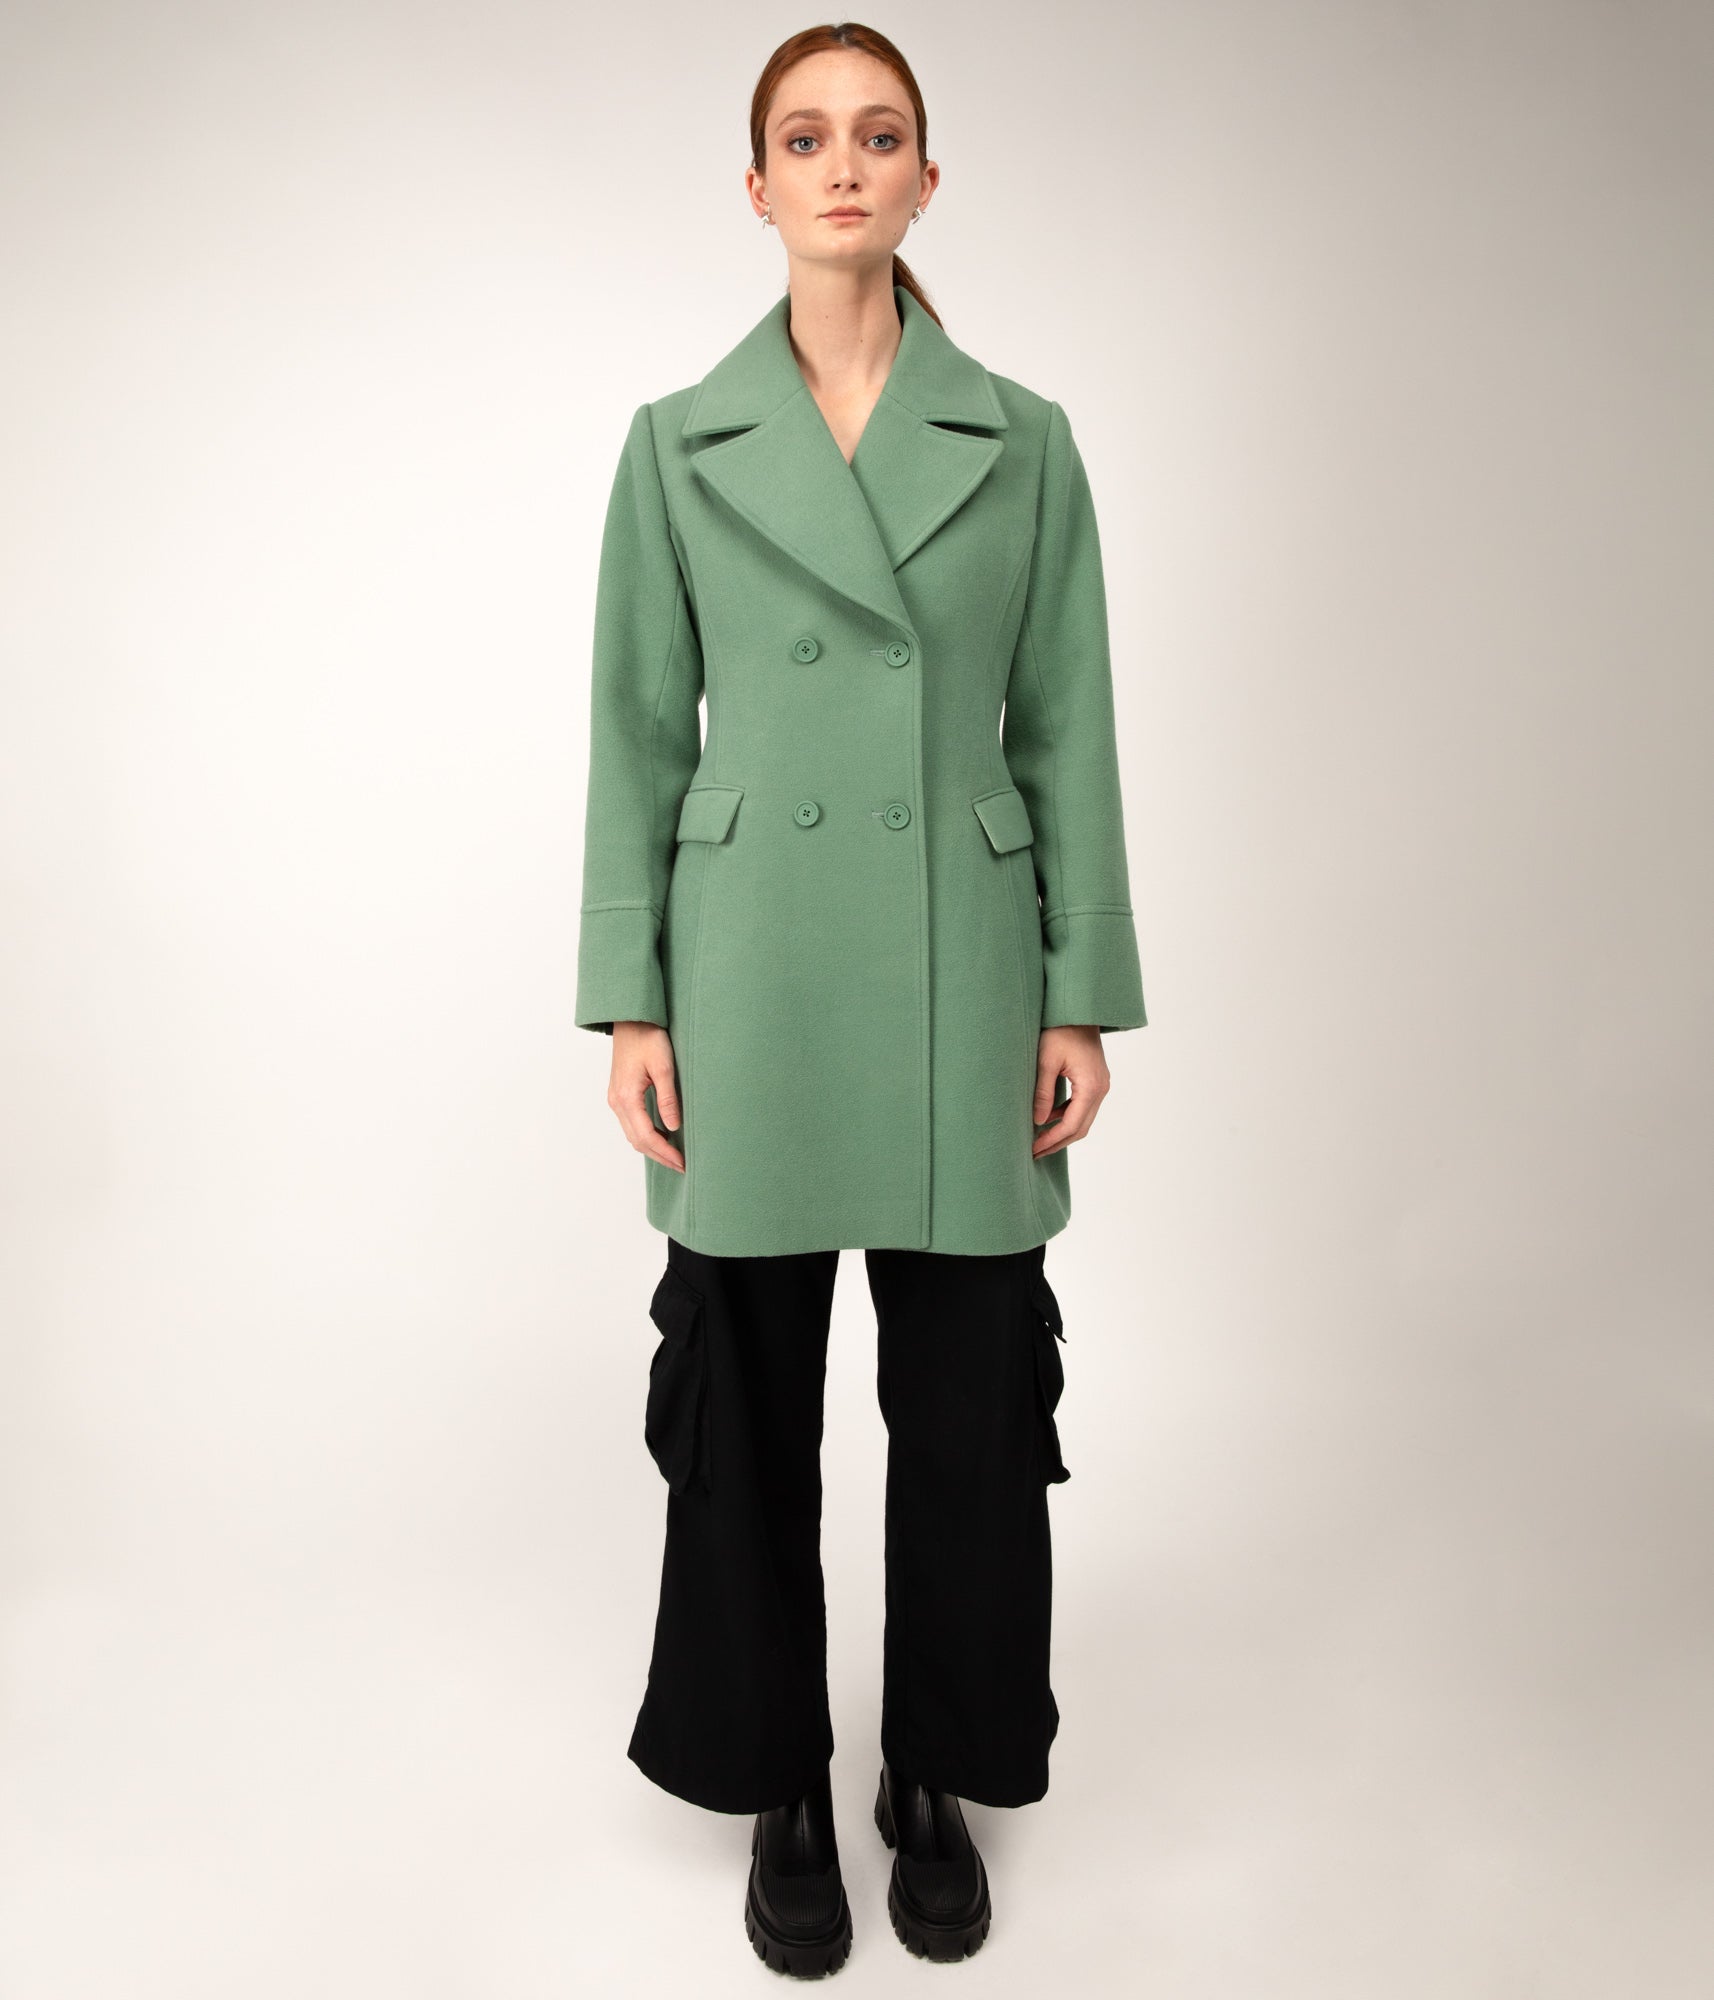 ODILIA Women's Vegan Coat | Color: Beige - variant::beige